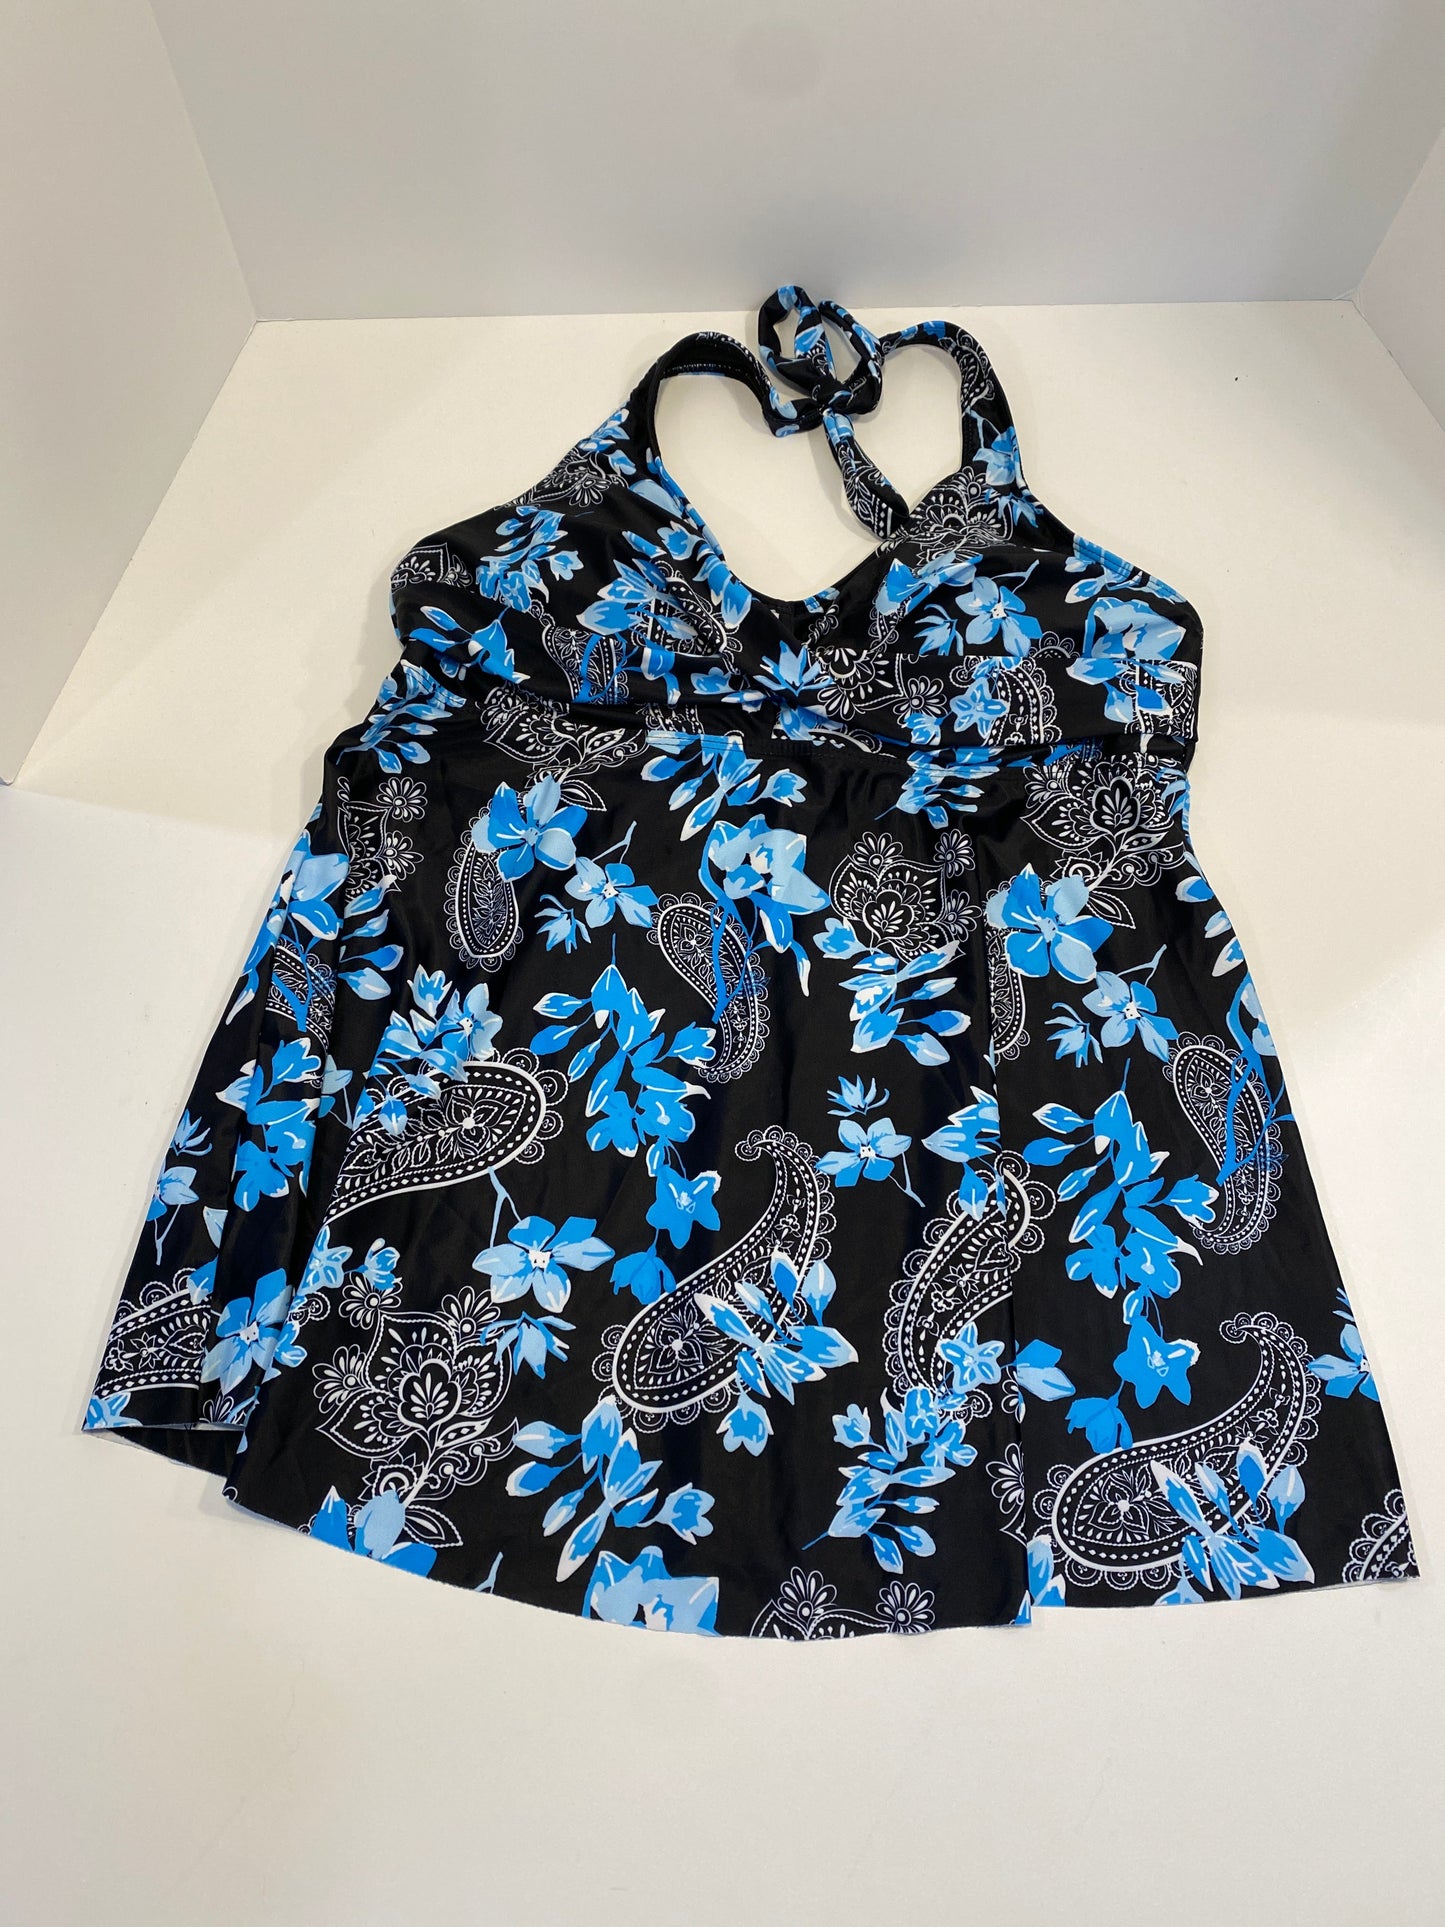 Blue Swimsuit 2pc Clothes Mentor, Size Xl